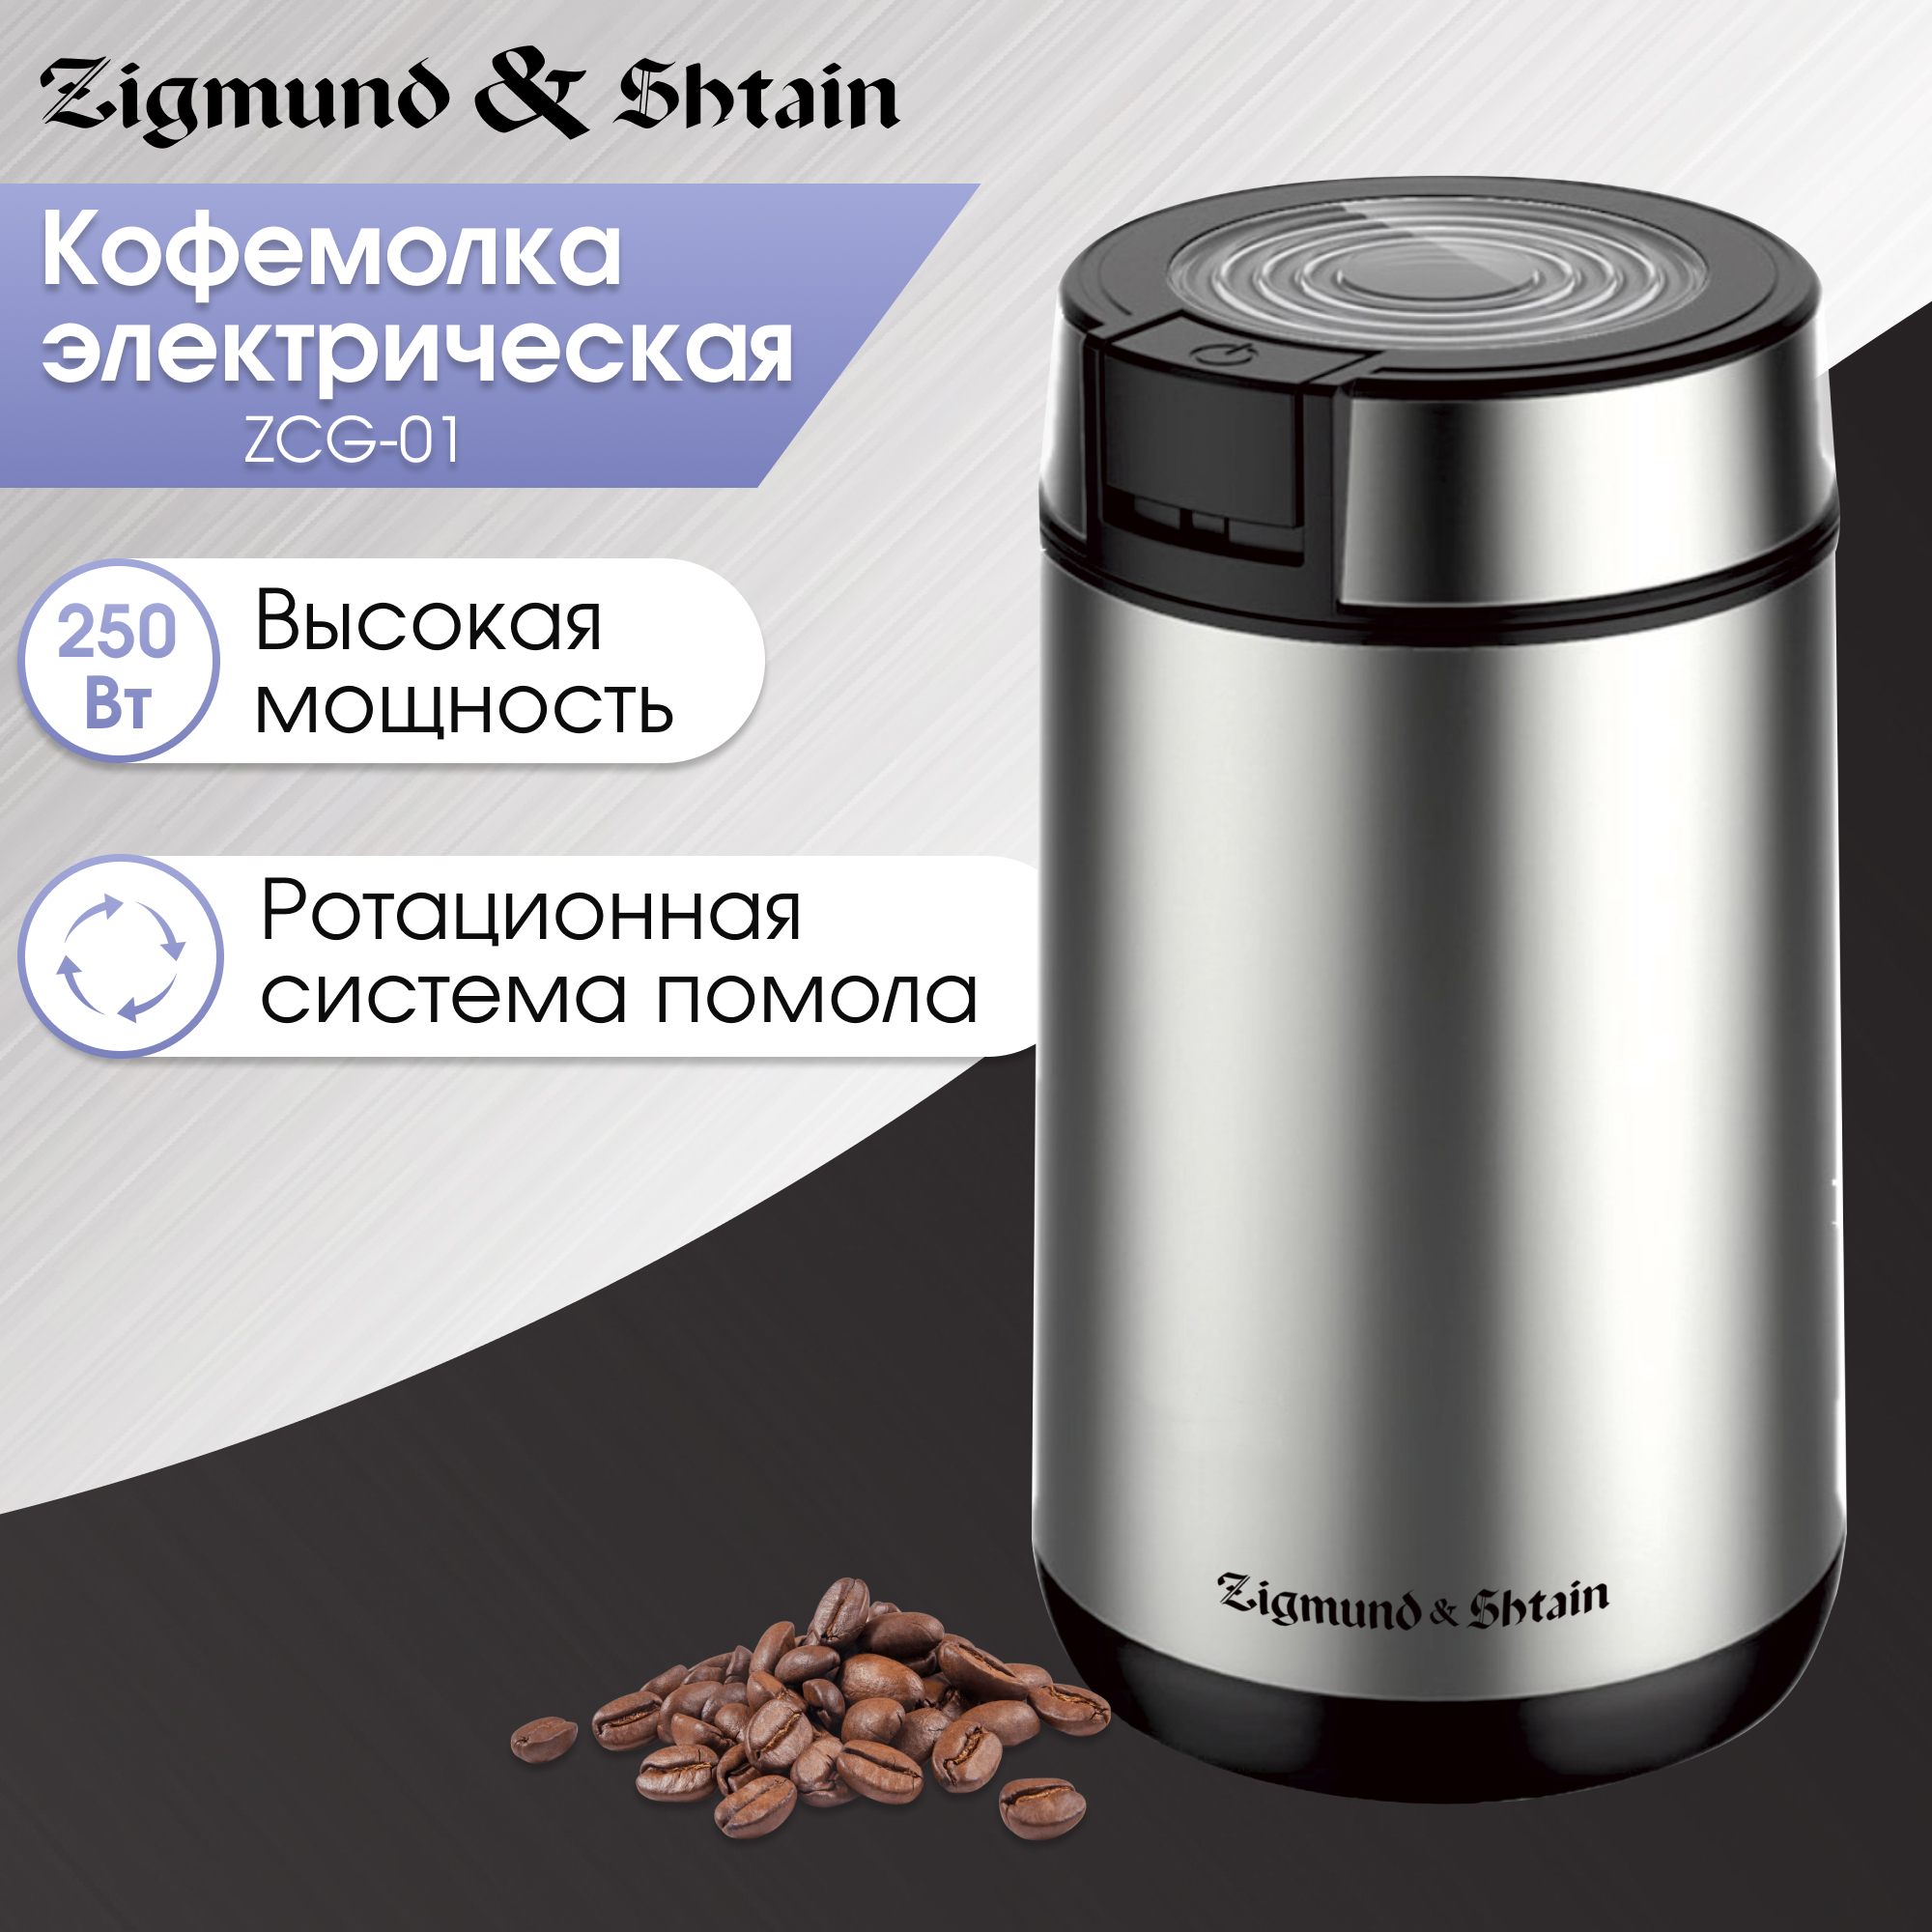 Кофемолка Zigmund & Shtain ZCG-01 серебристый, серый кофемолка viconte vc 3113 электрическая ножевая 280 вт 50 г чёрная